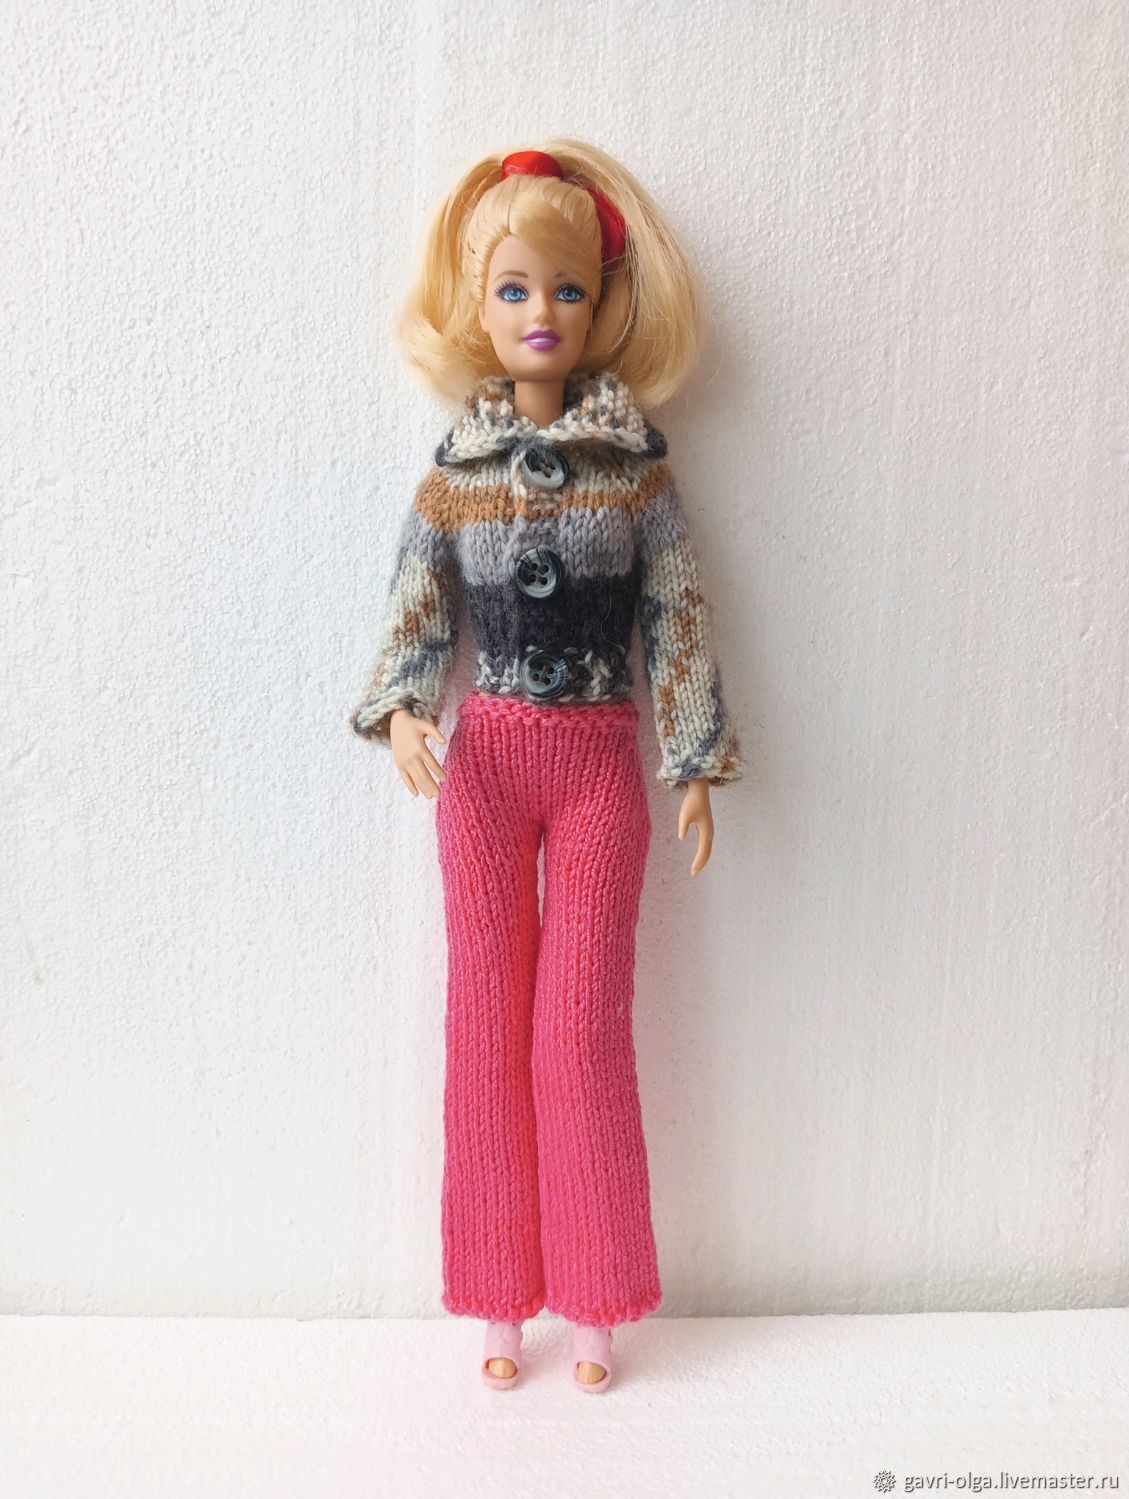 Как сшить футболку для куклы Barbie своими руками (DIY)